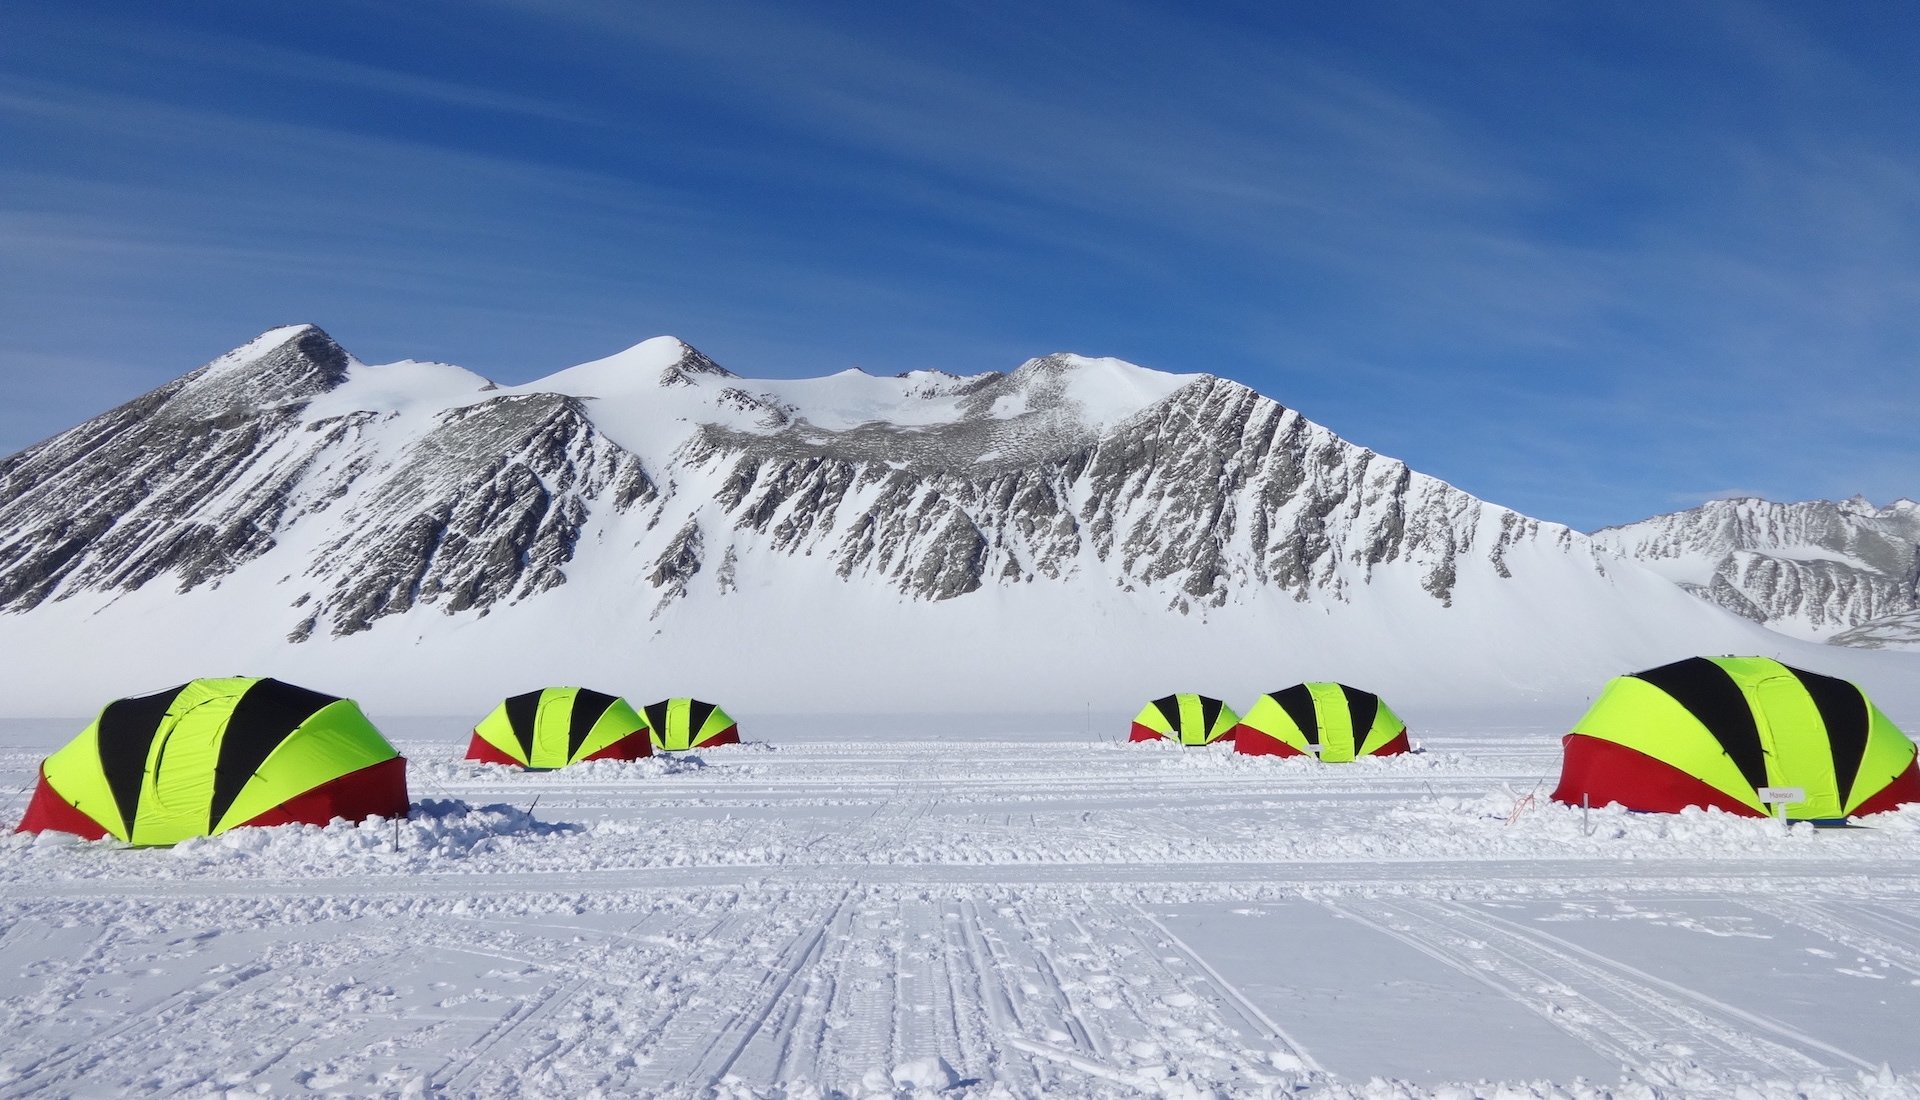 Antarctica, Triple 7 Expedition: Union Glacier Camp tents